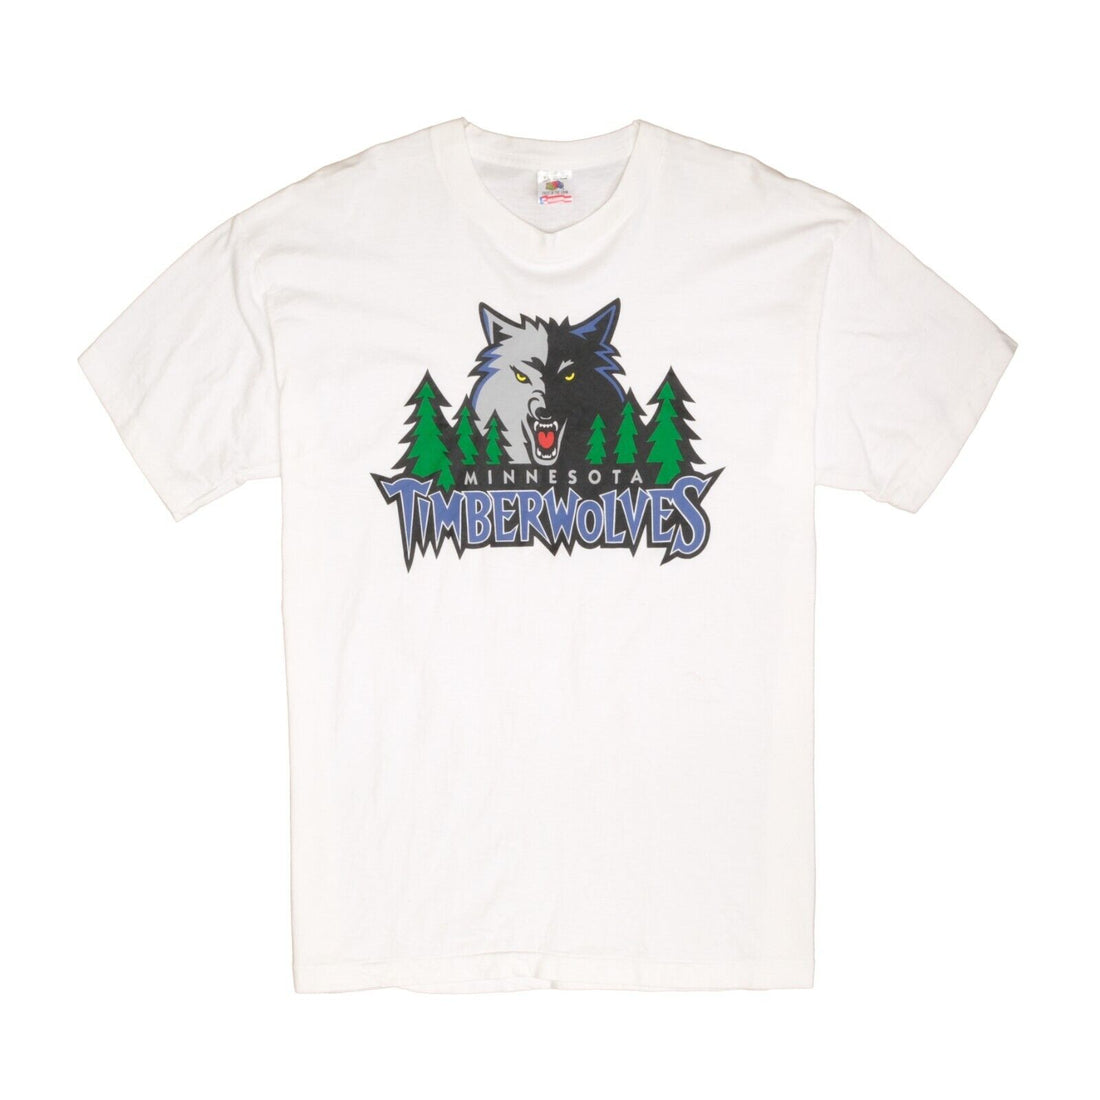 Vintage Minnesota Timberwolves T-Shirt Size XL 90s NBA